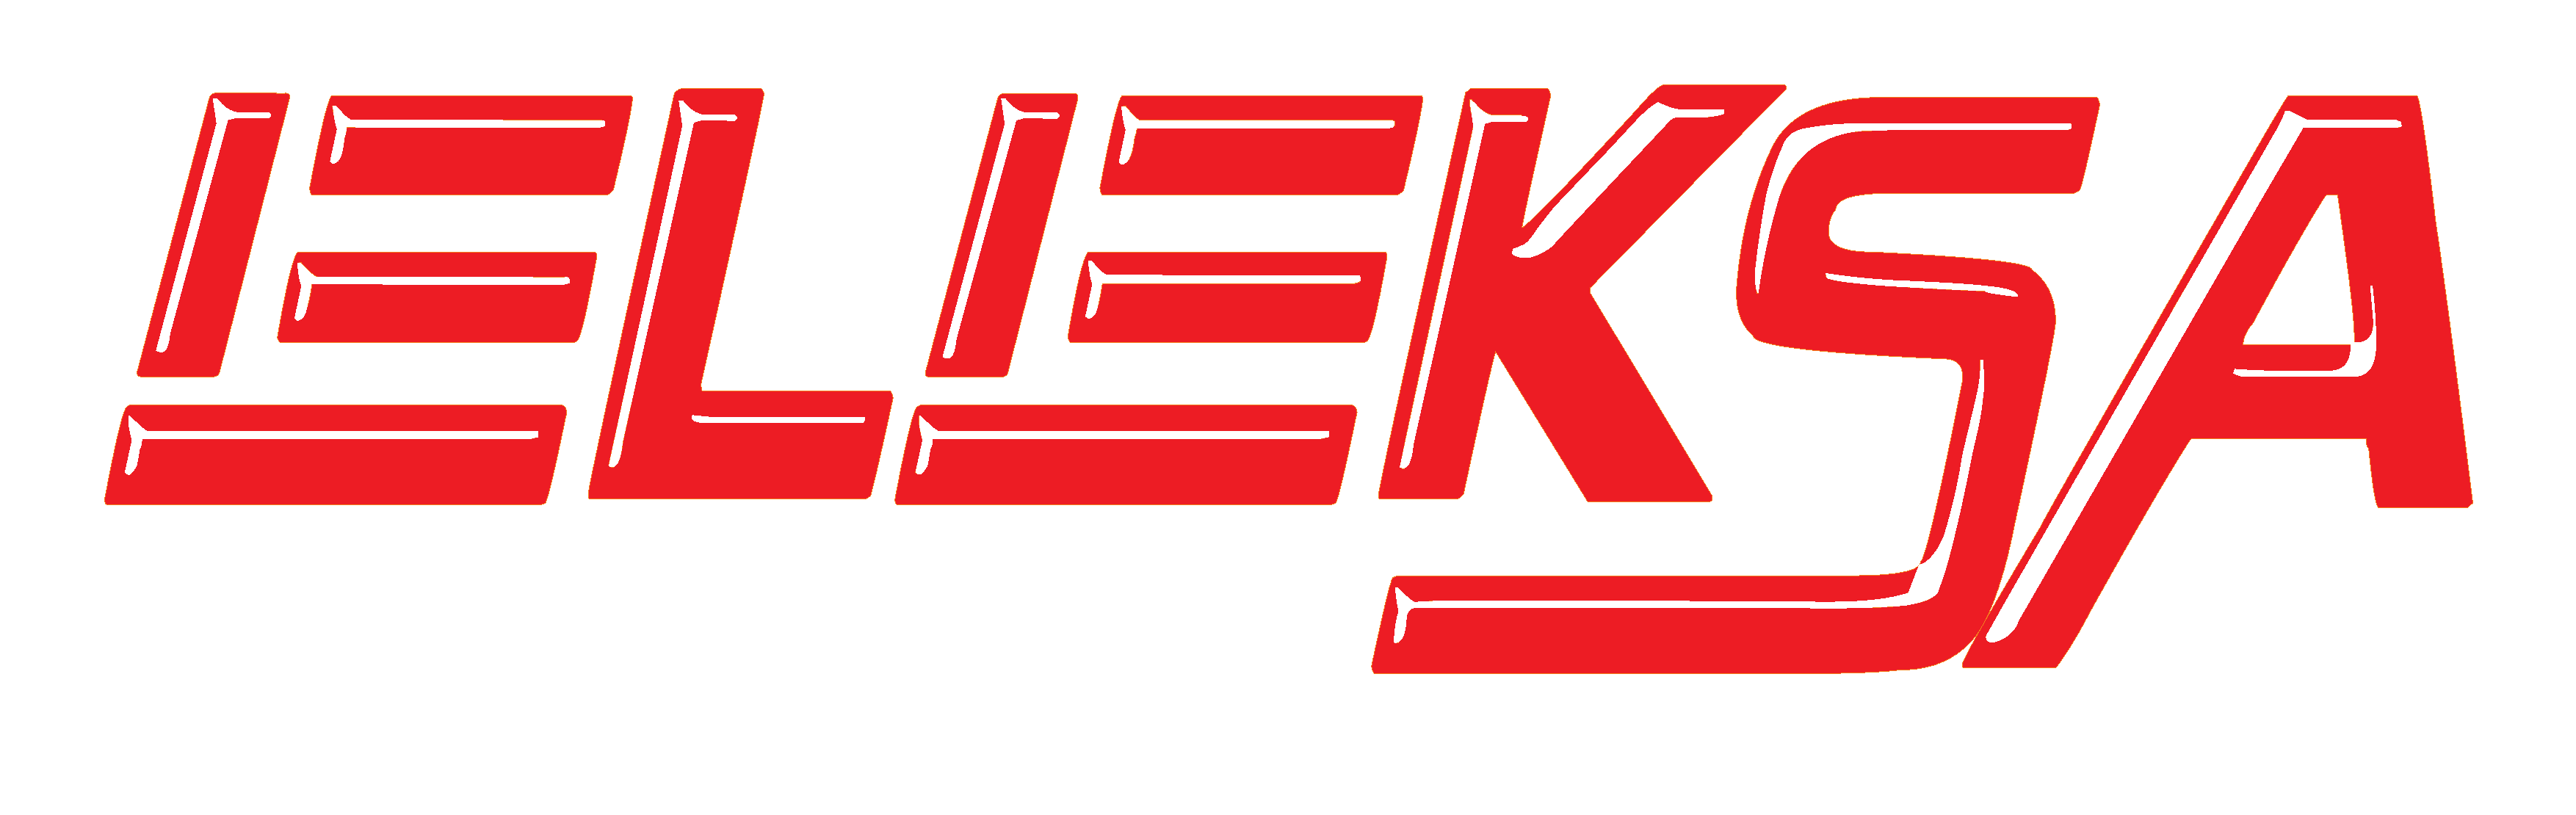 Eleksa Logo with white slogan